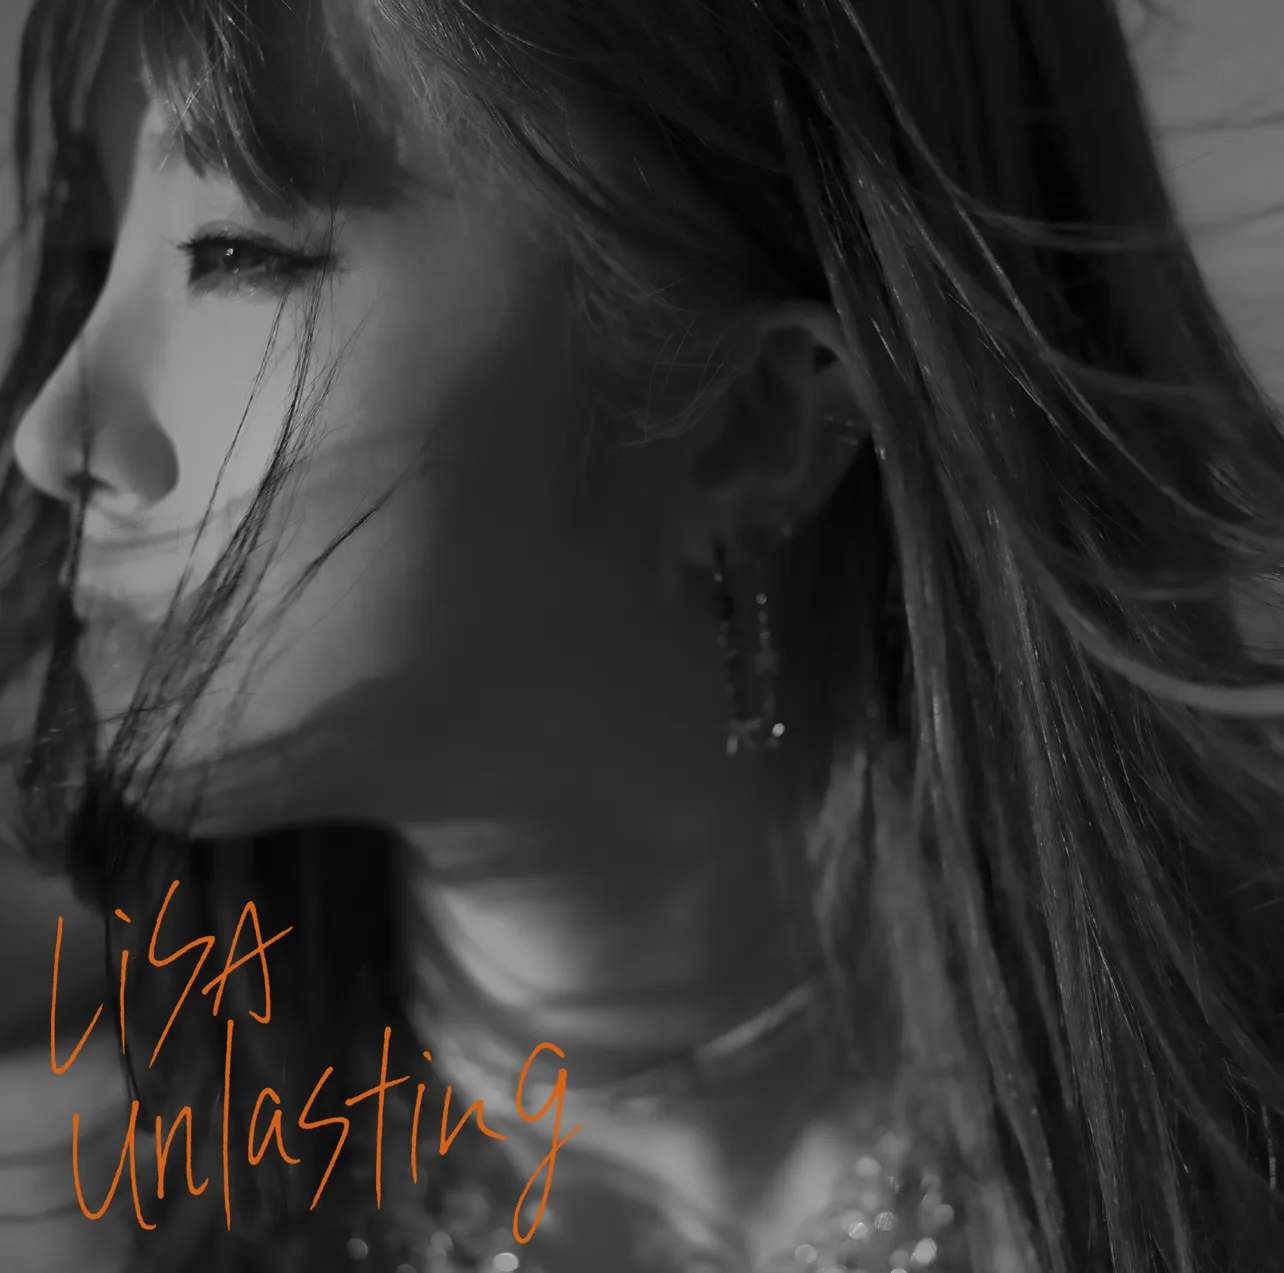 LiSAの16thシングル「unlasting」通常盤ジャケット